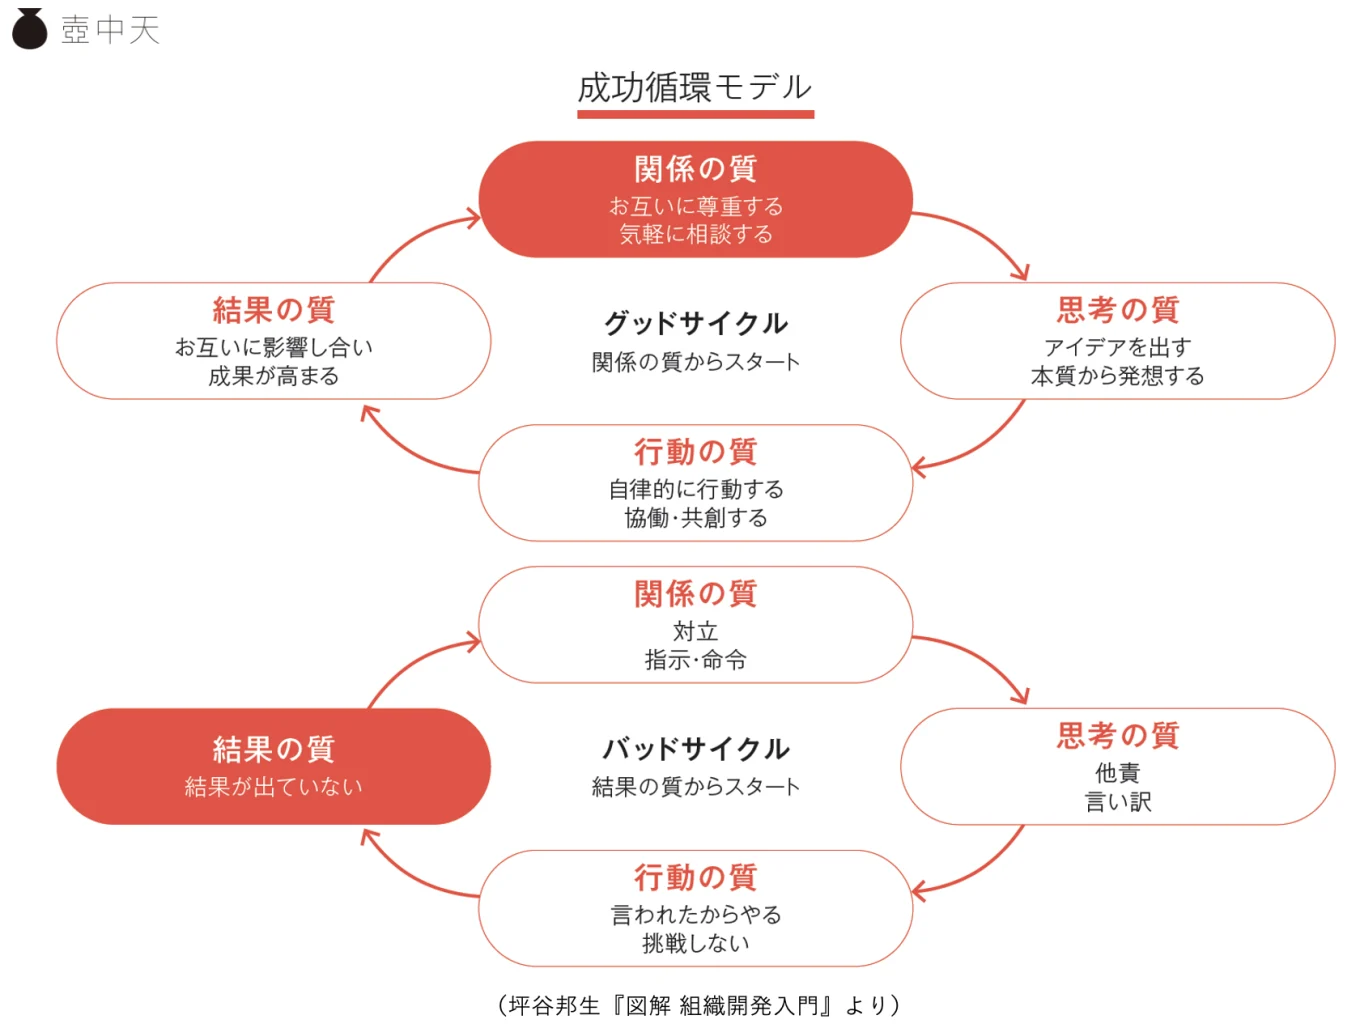 関係の質に着目した成功循環モデルの図